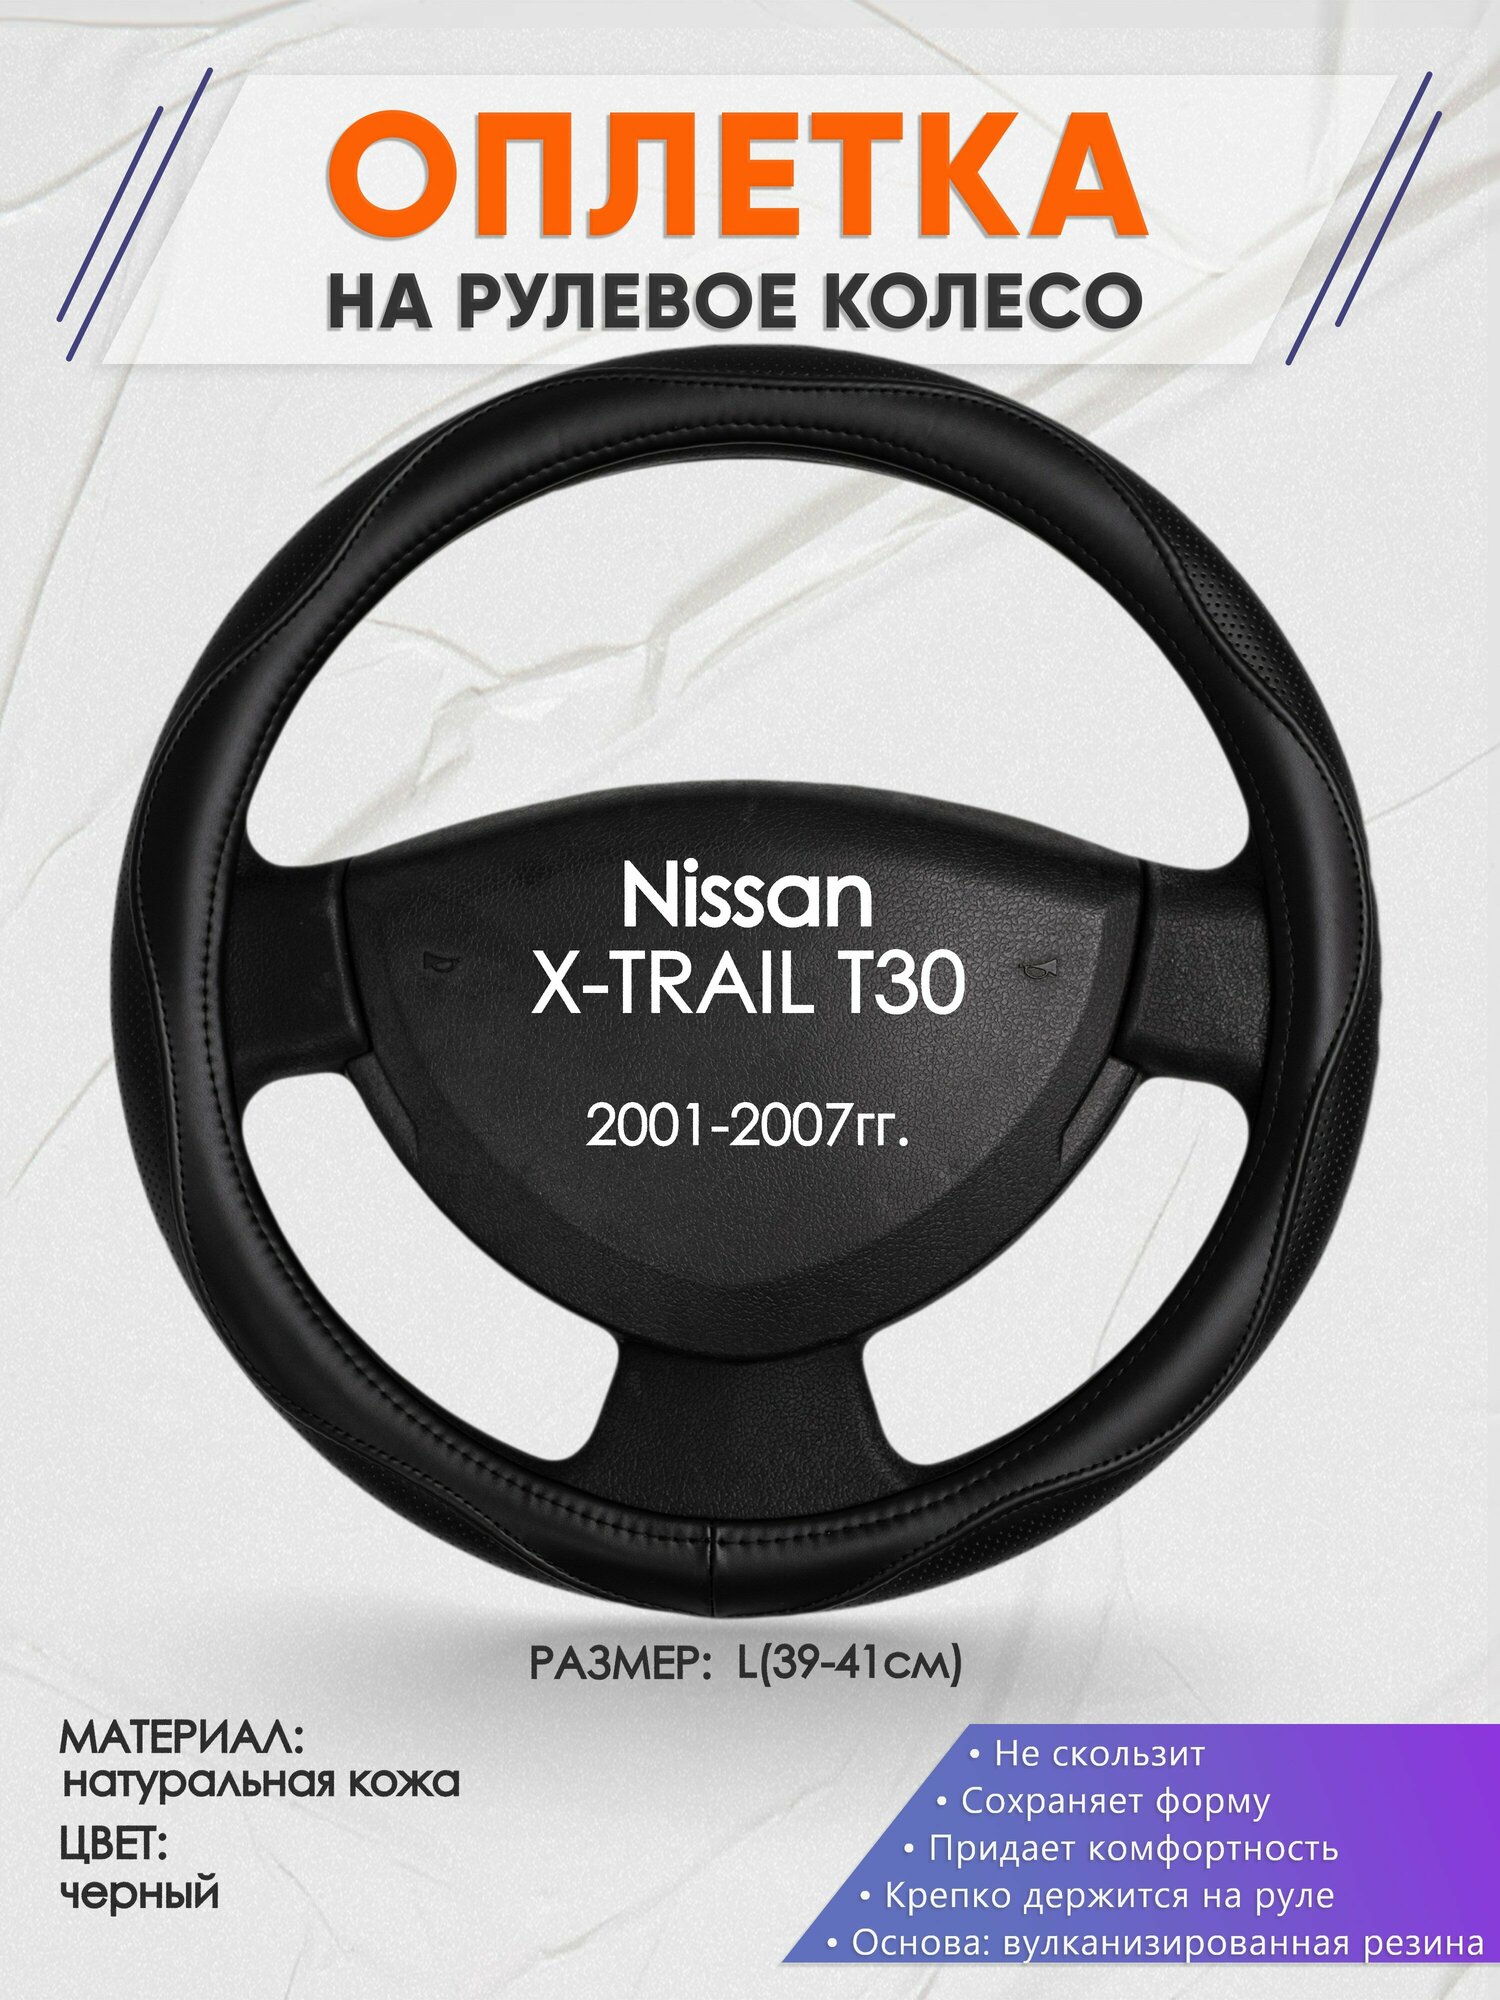 Оплетка на руль для Nissan X-TRAIL T30(Ниссан Икс Трейл) 2001-2007, L(39-41см), Натуральная кожа 31